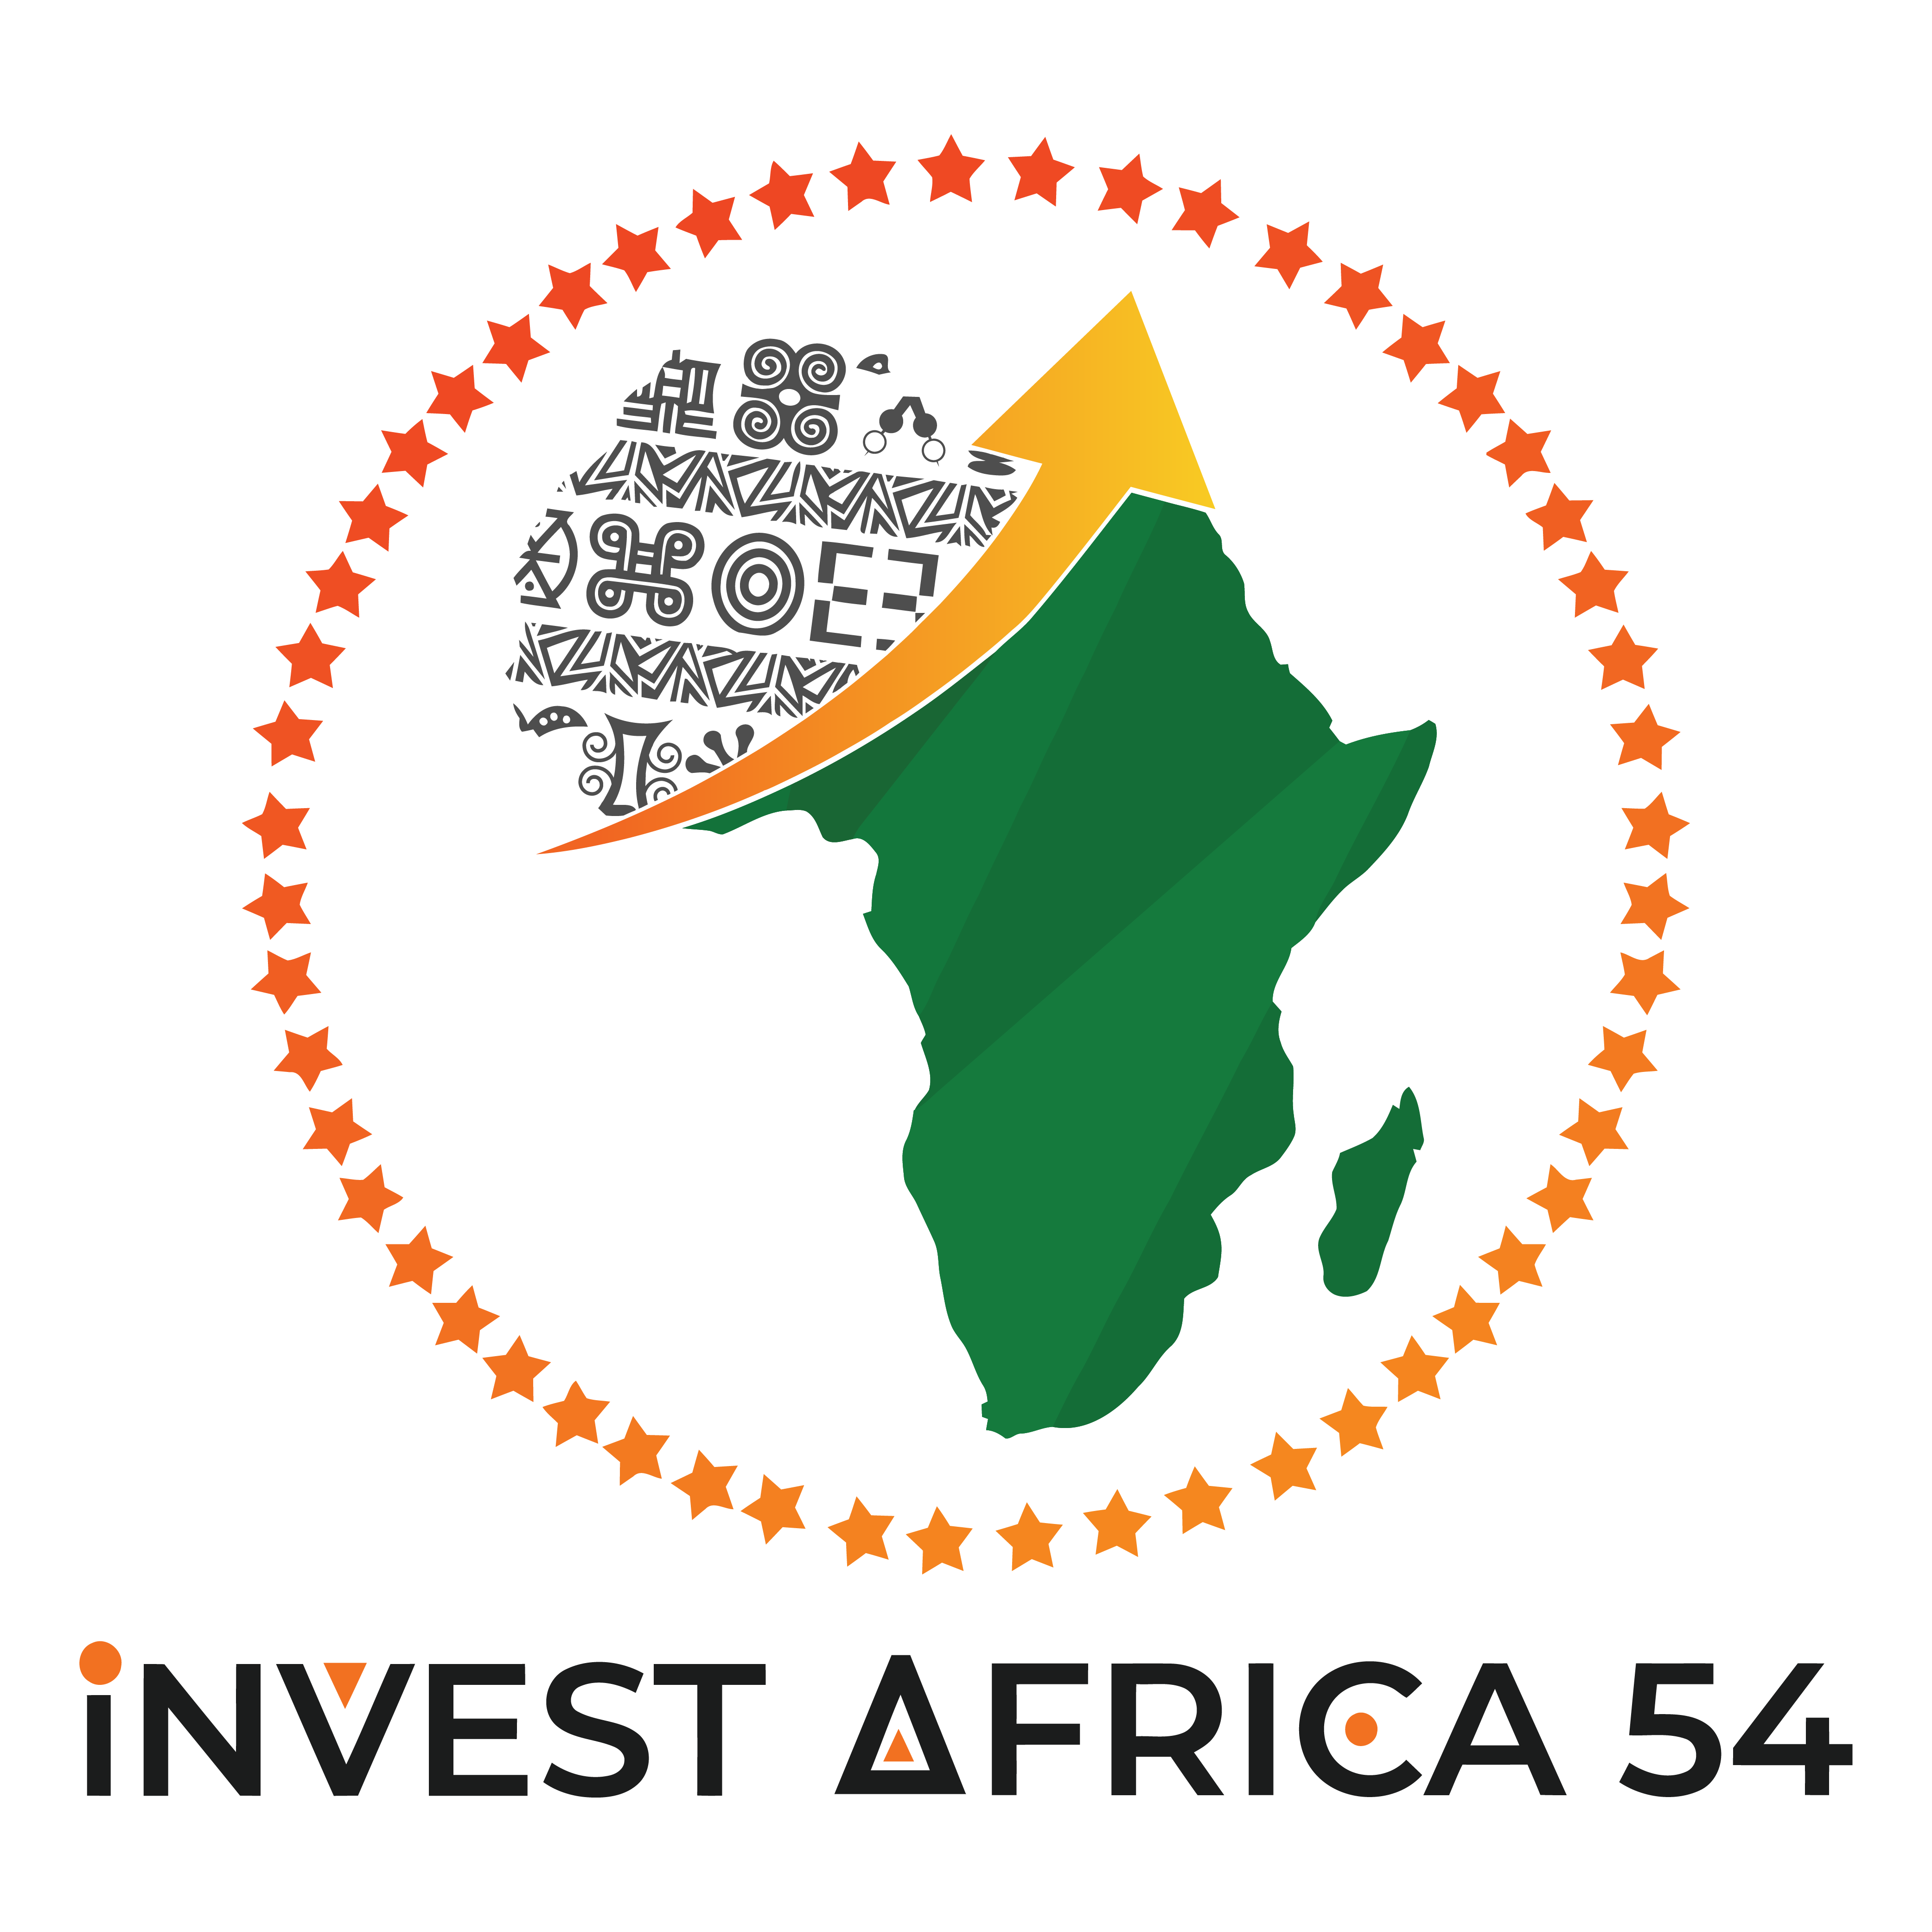 Invest Africa 54